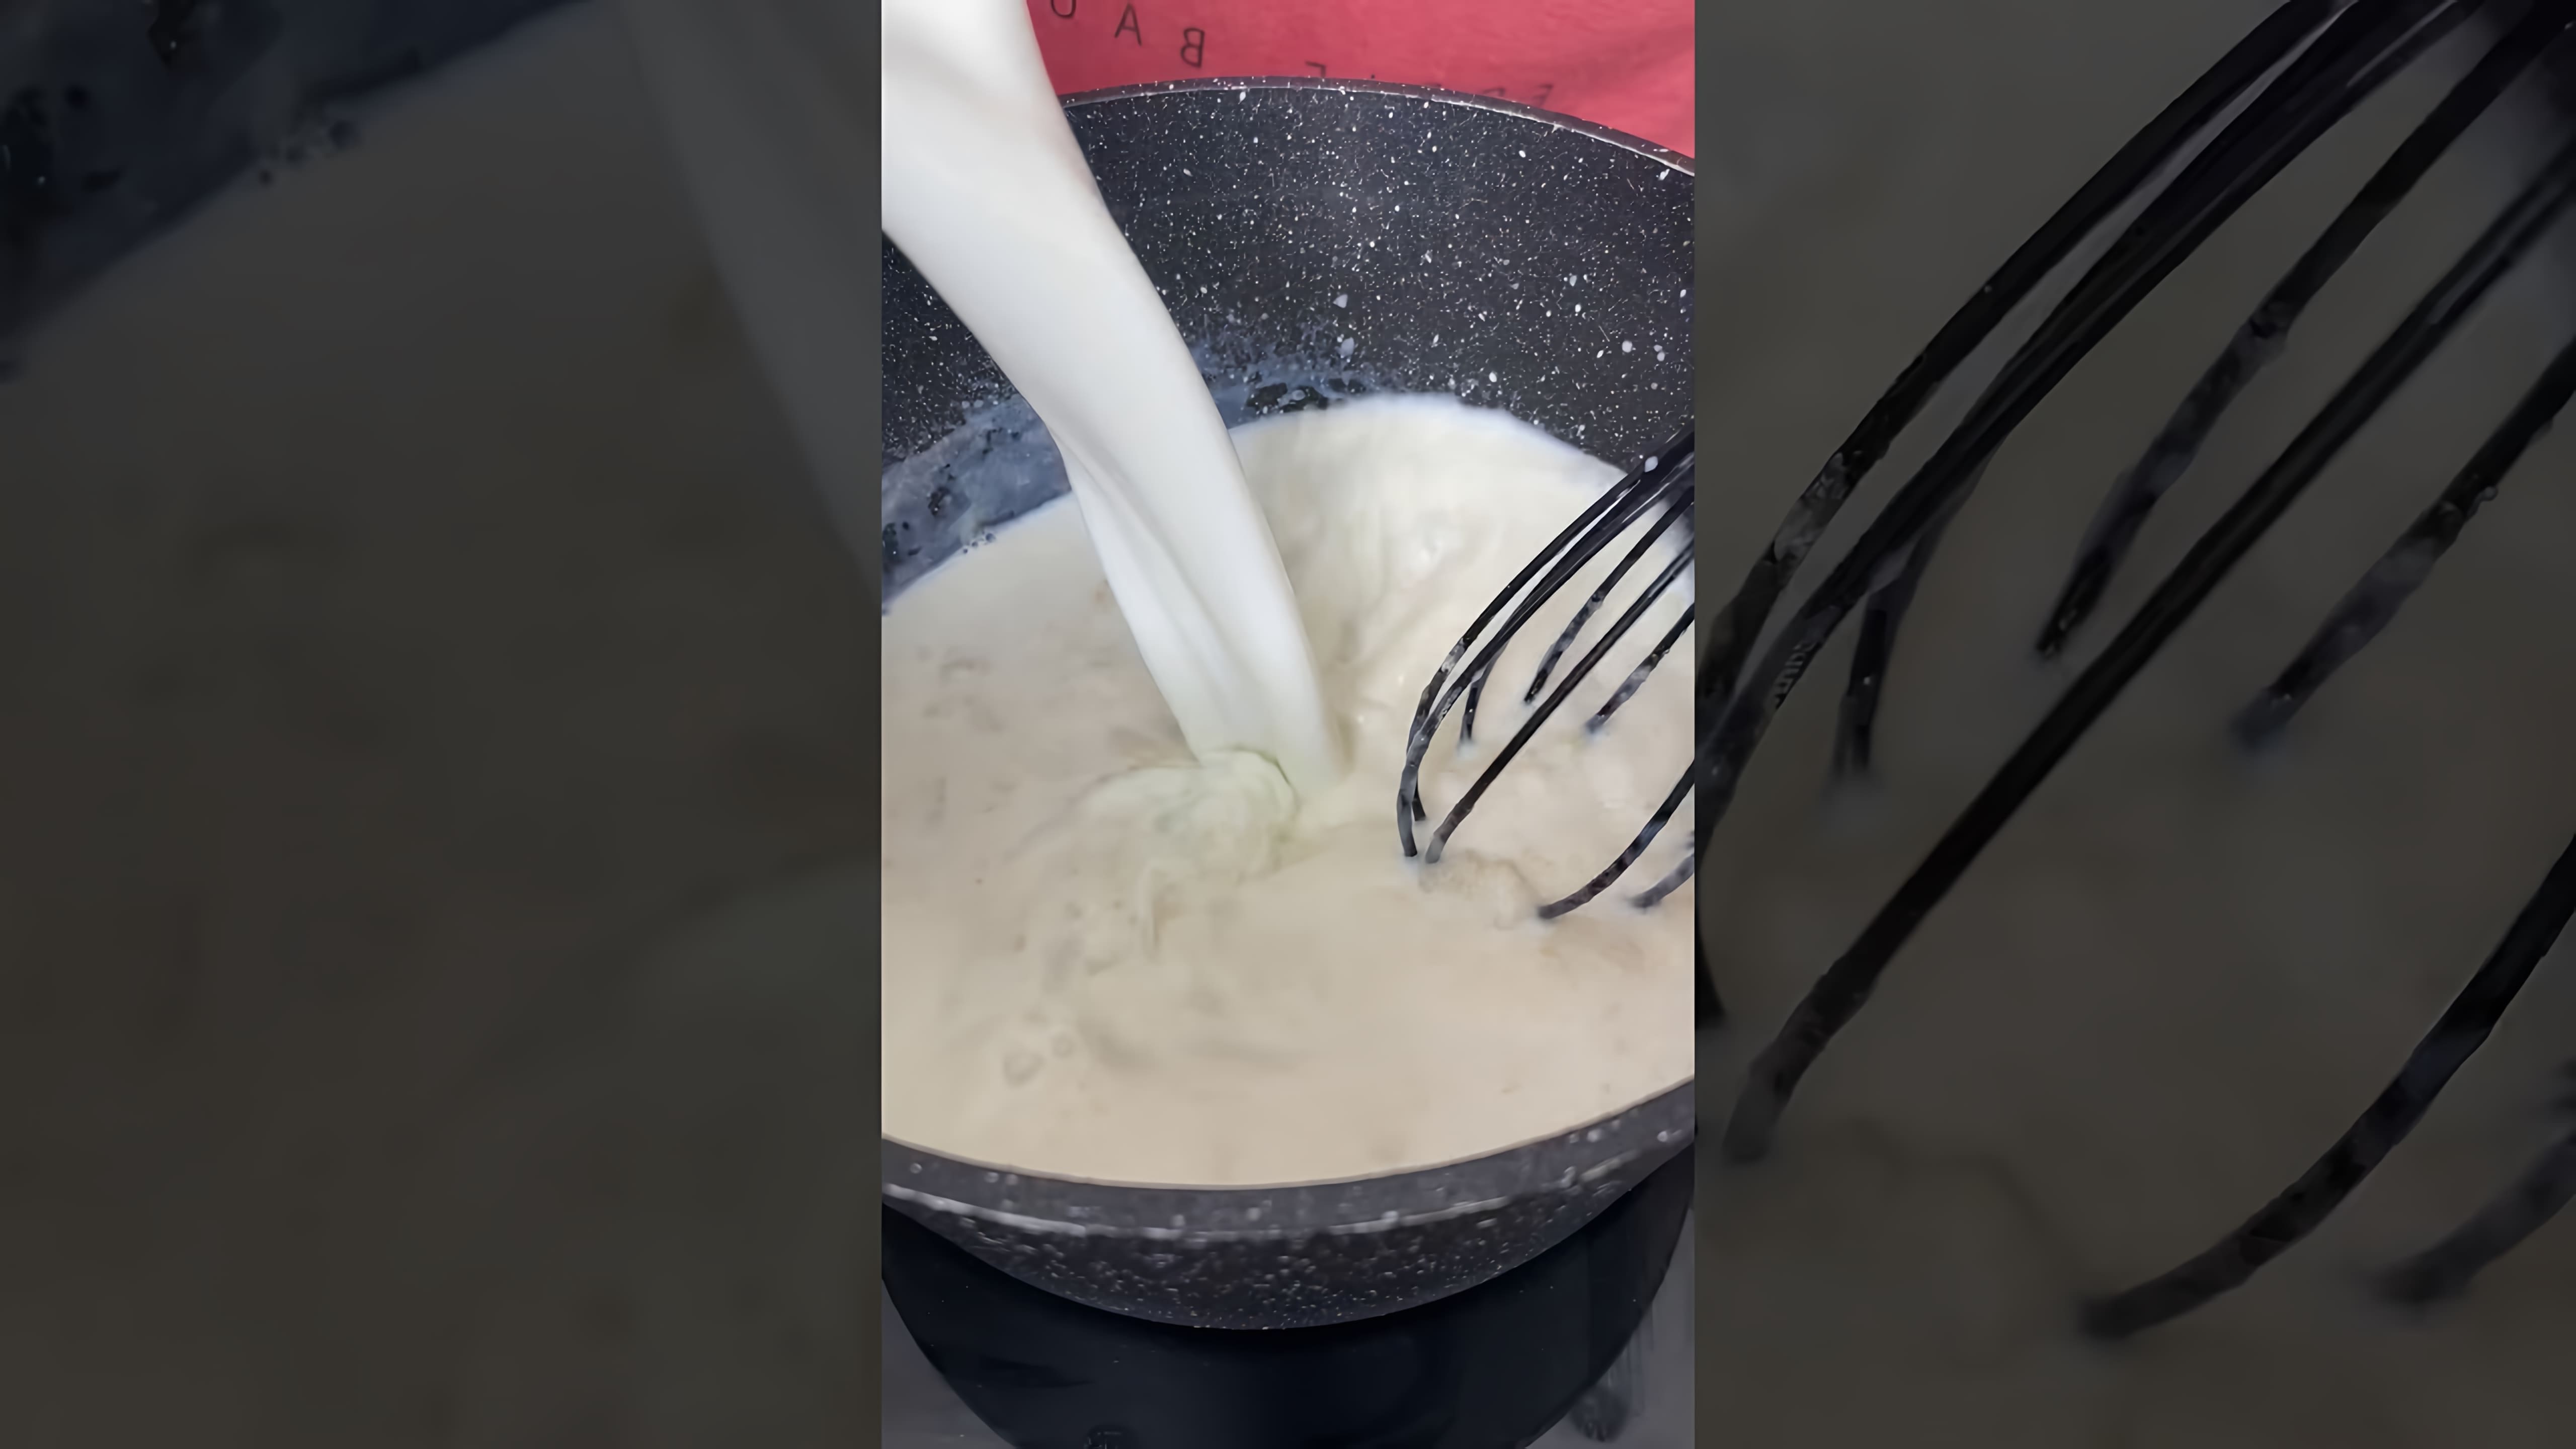 В этом видео демонстрируется процесс приготовления макарон с сыром